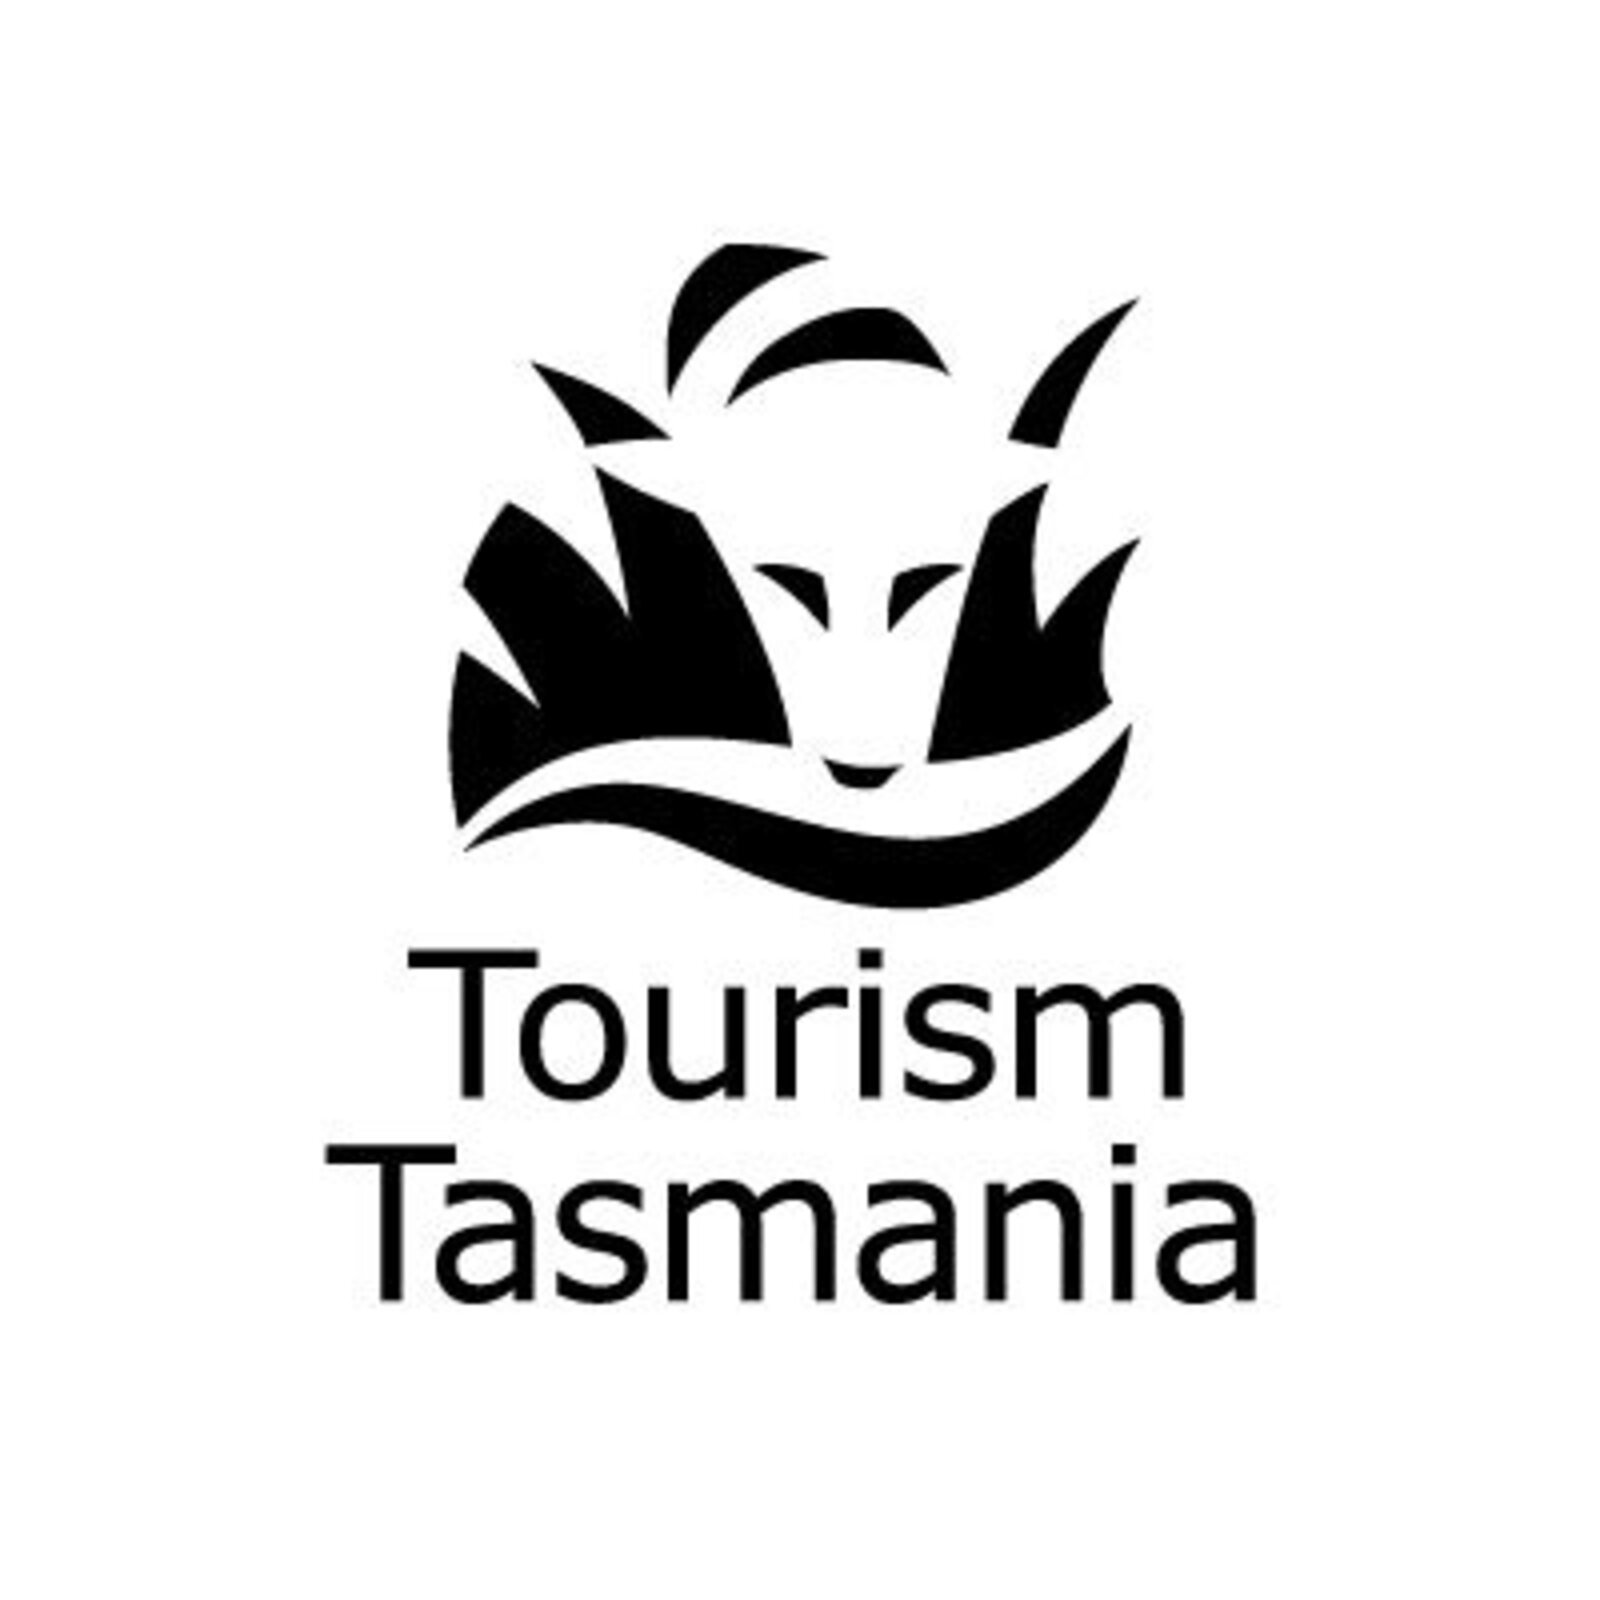 Tourism Tasmania logo